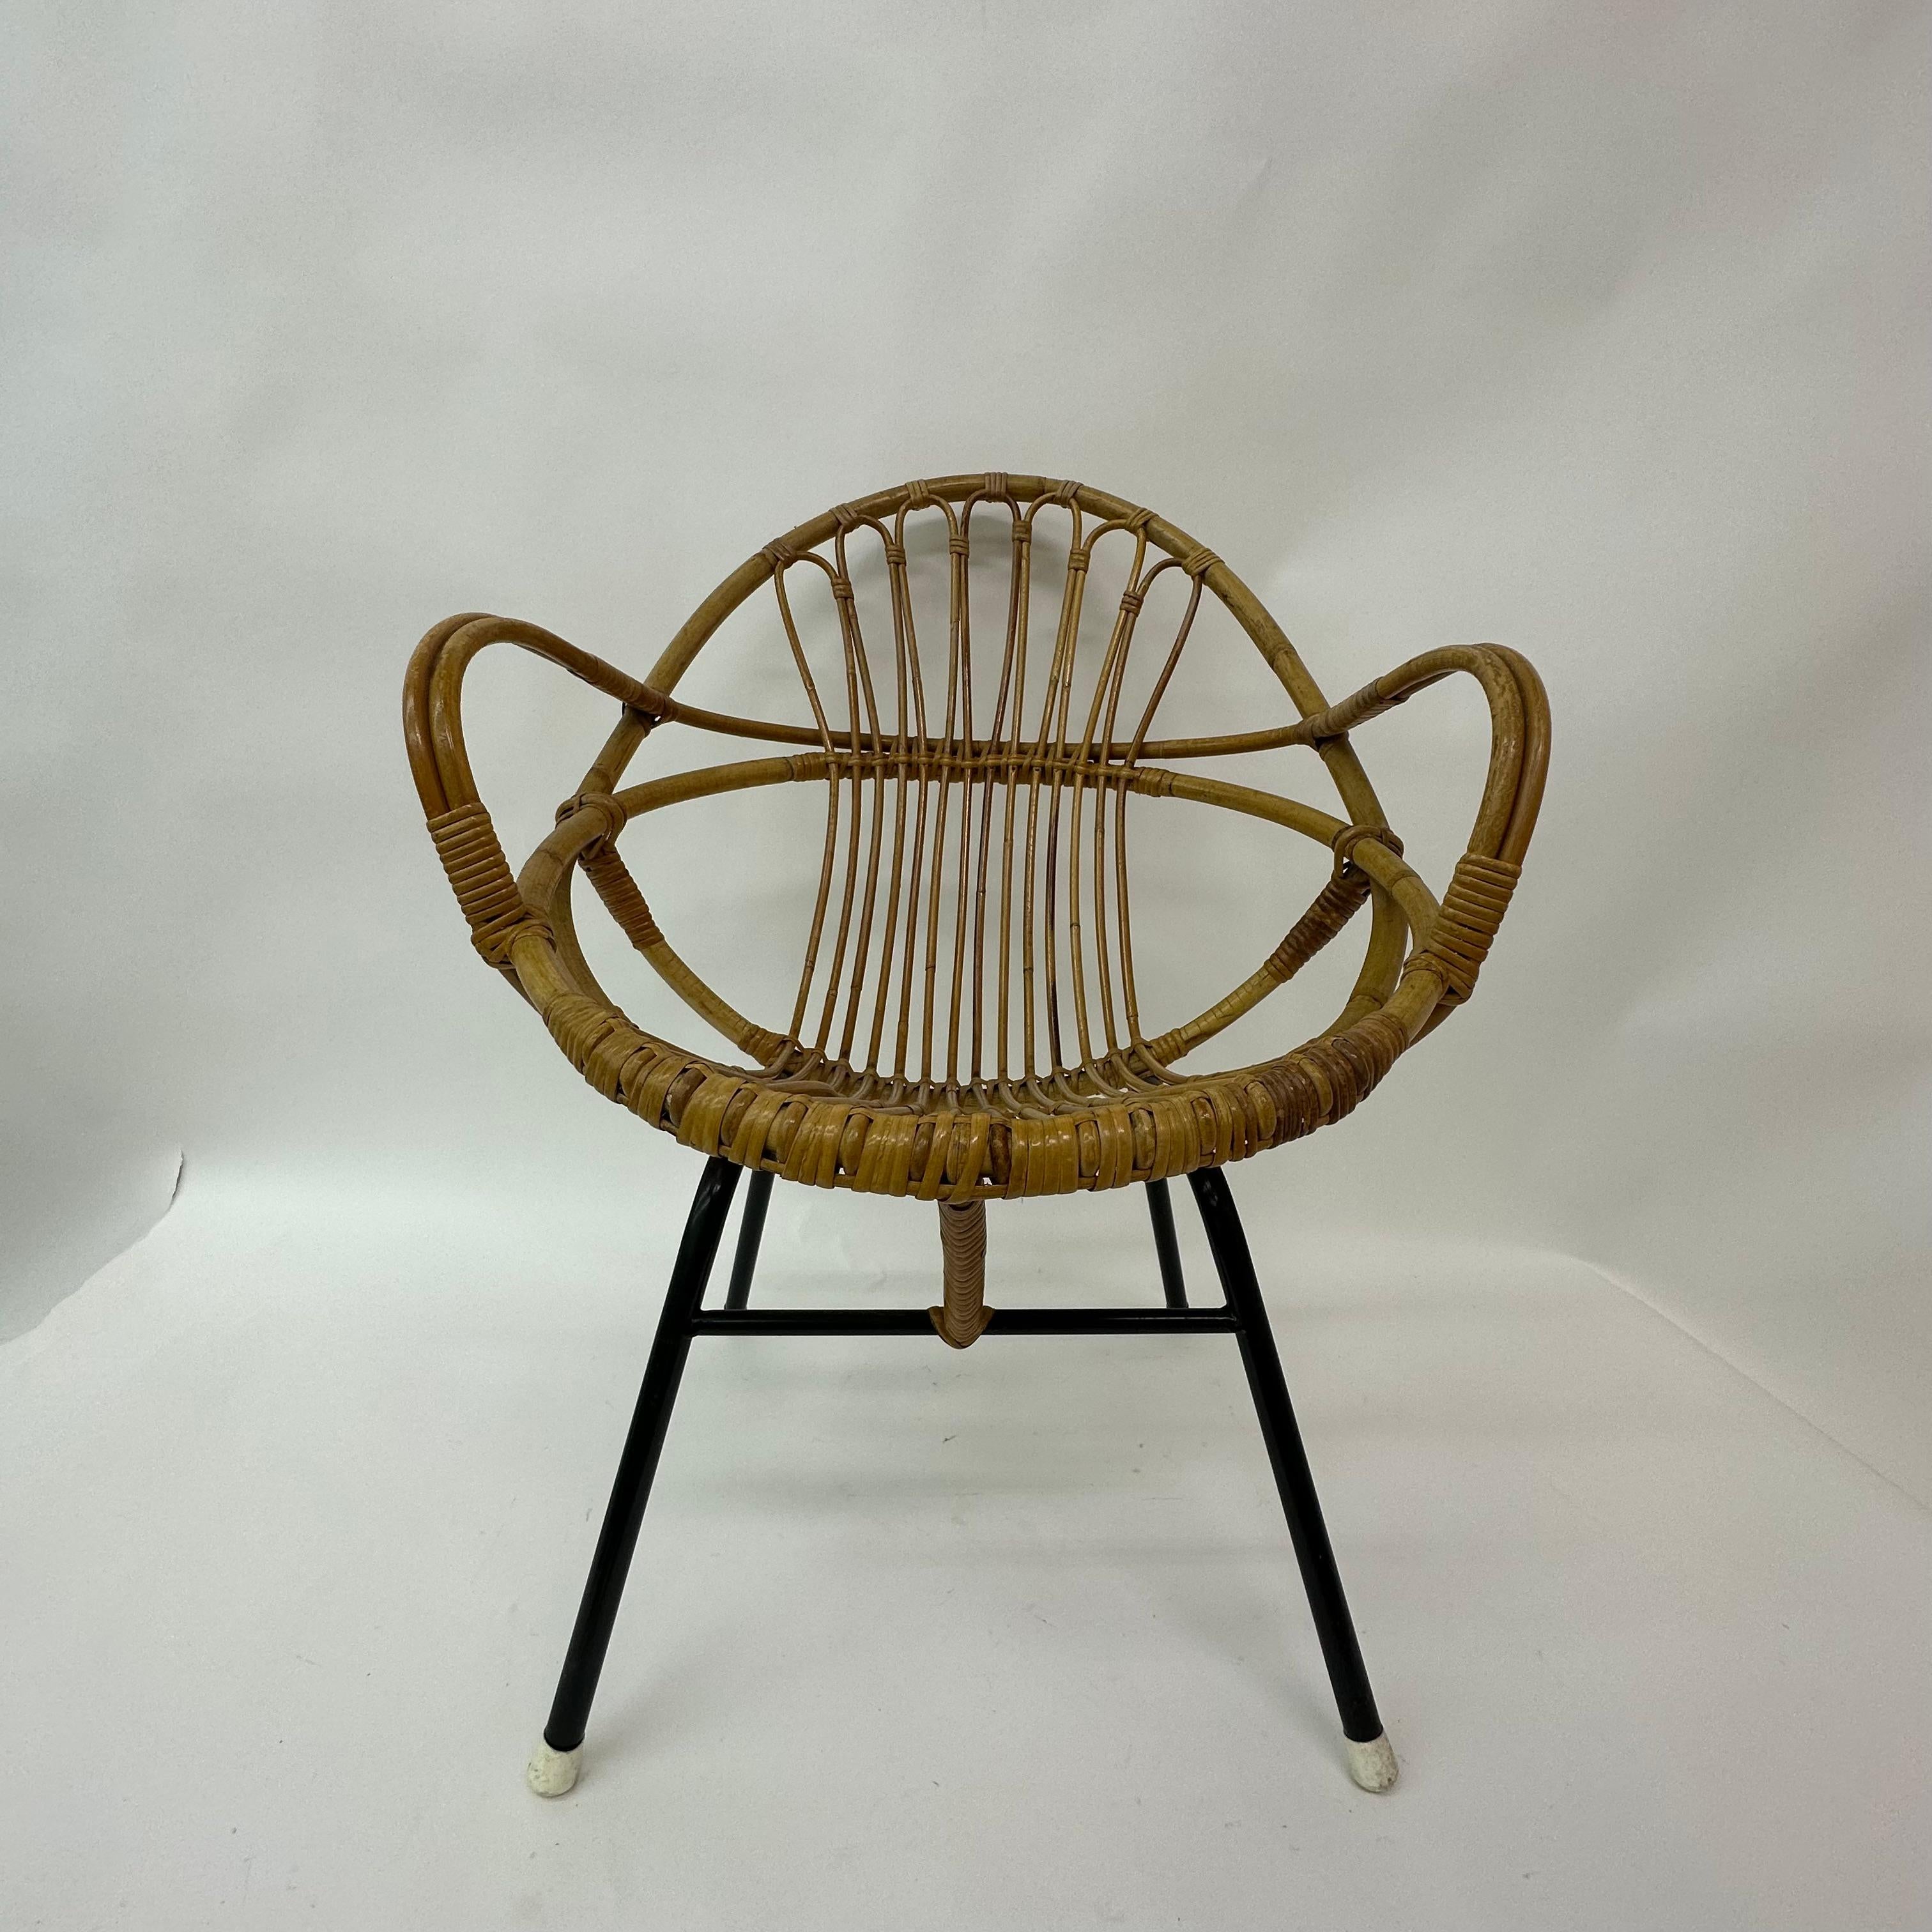 Chaise longue en rotin Rohe Noordwolde, années 1950

Dimensions : 77cm H, 60cm D&H, 59cm L, 37cm H siège
Période : 1950's